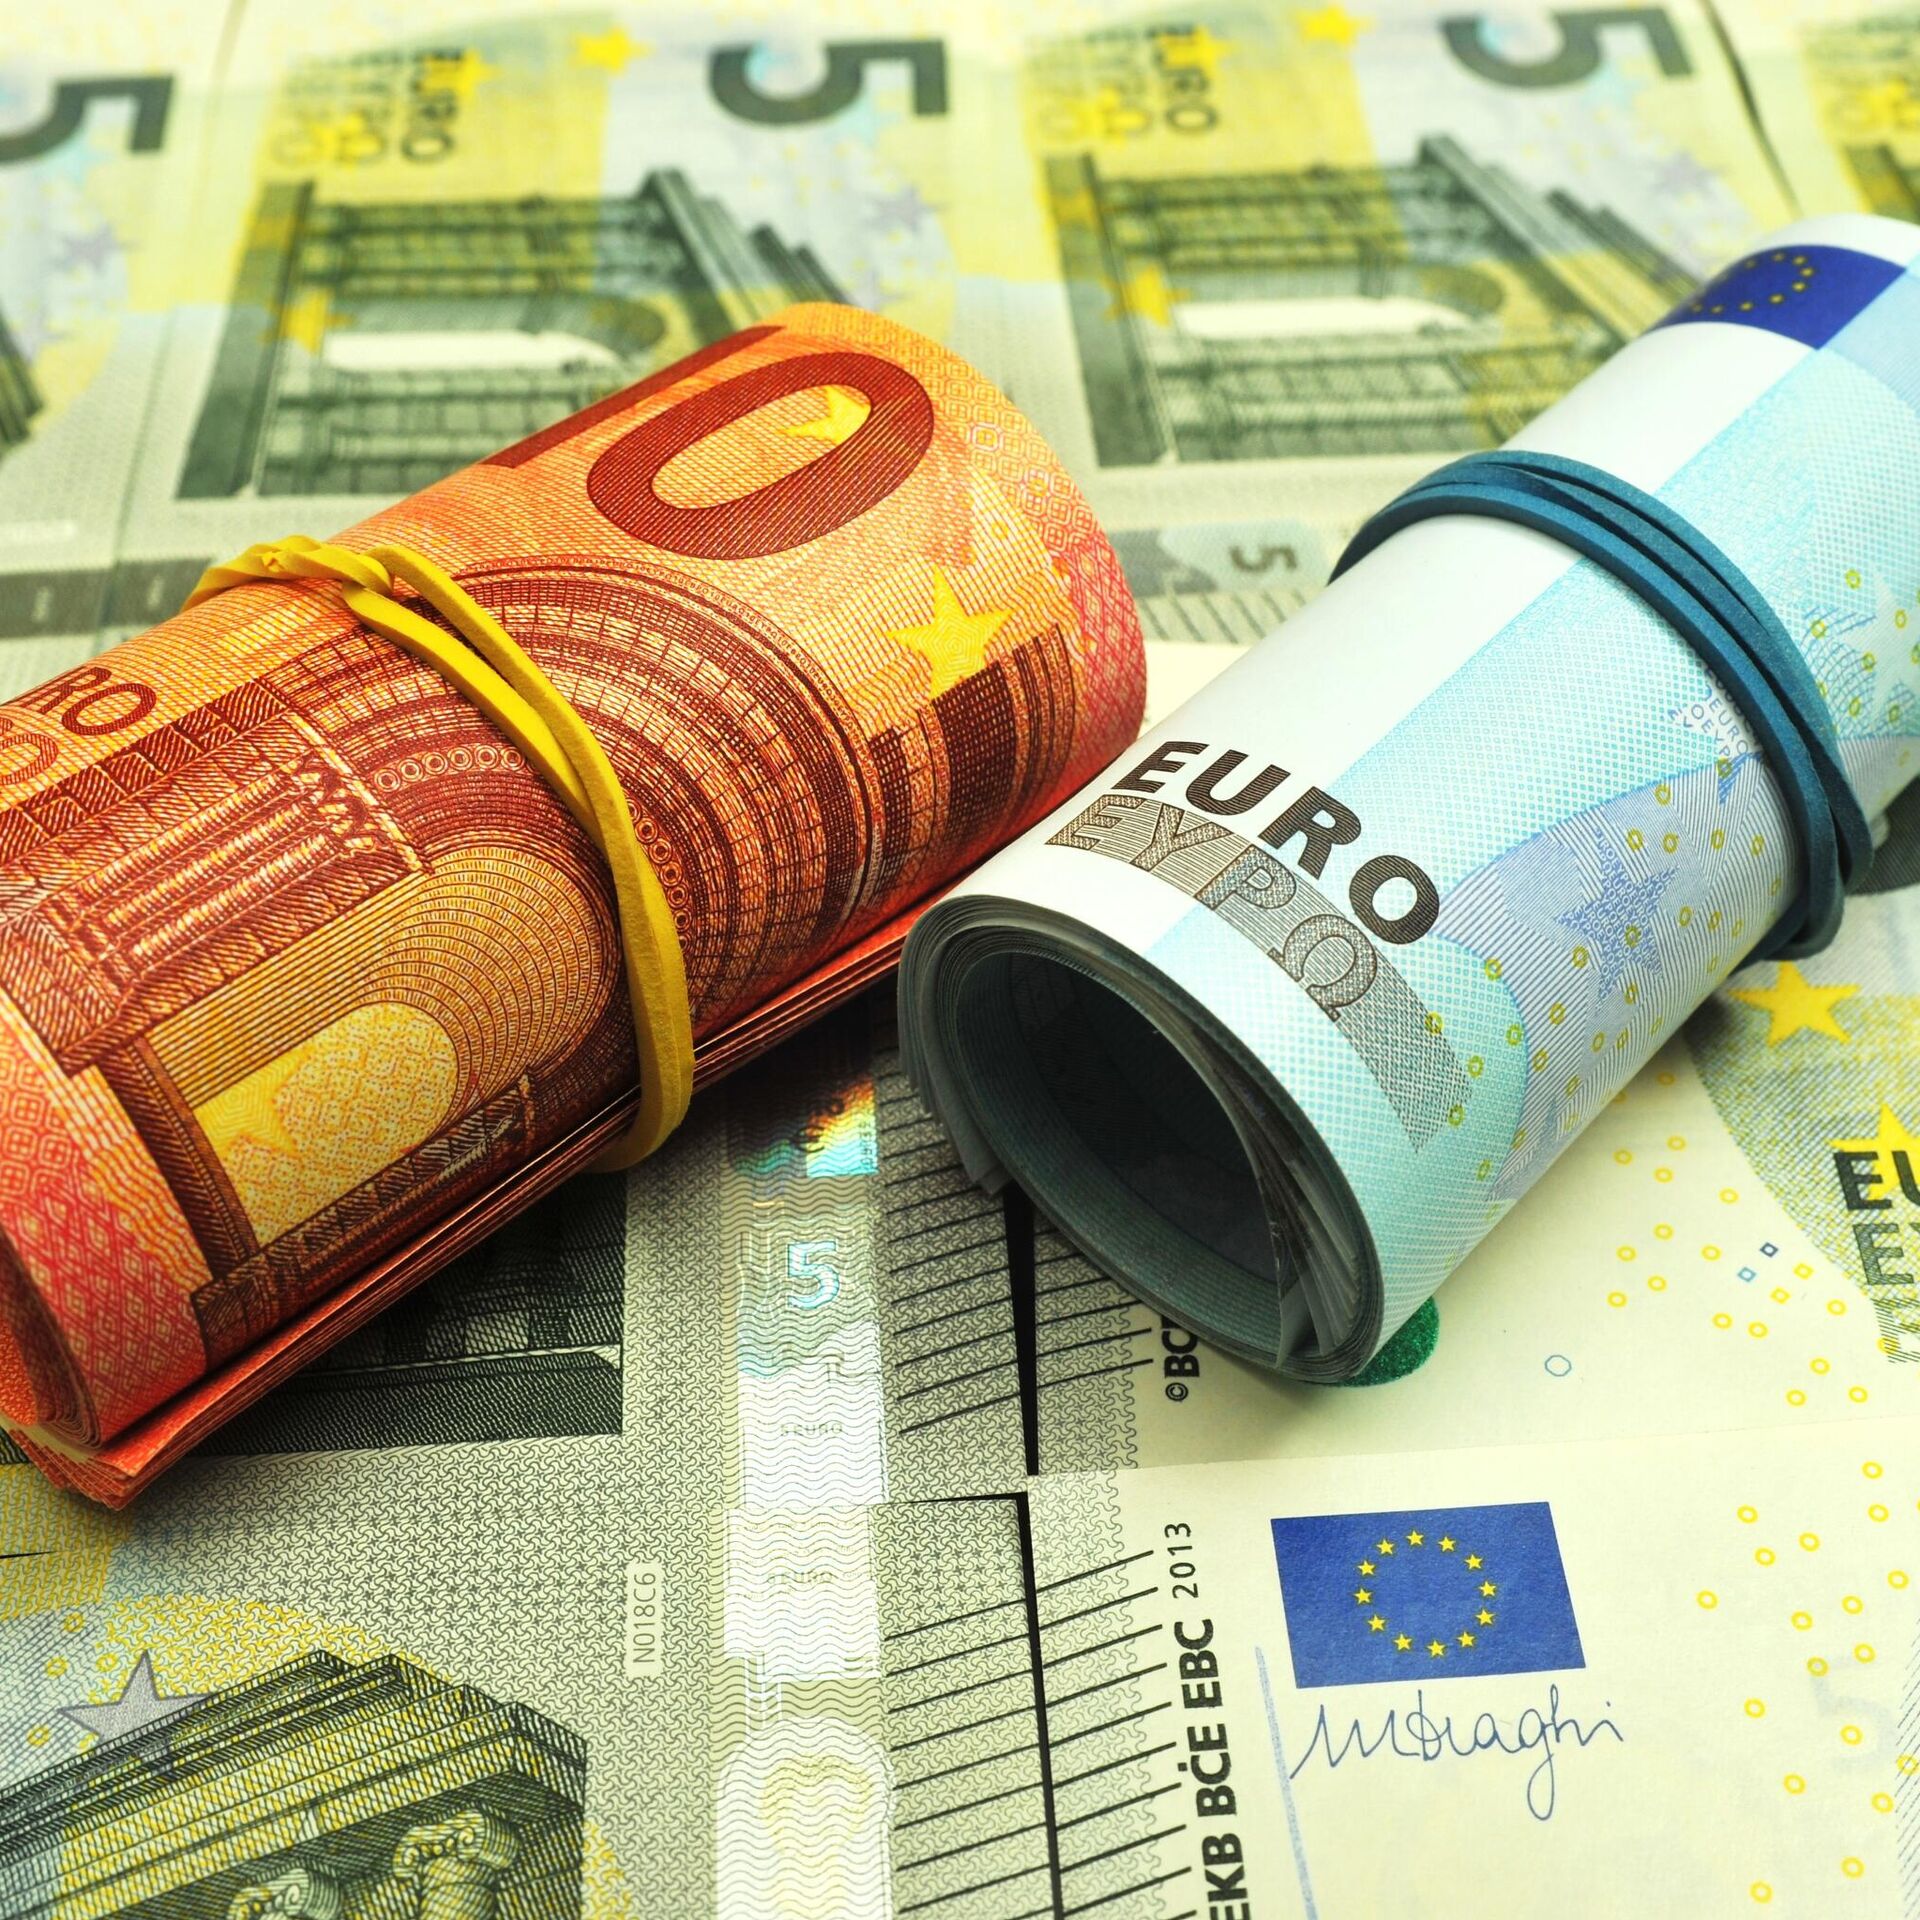 Какой сейчас евро. Евро в банках Курска. Чирпон цена на евро.